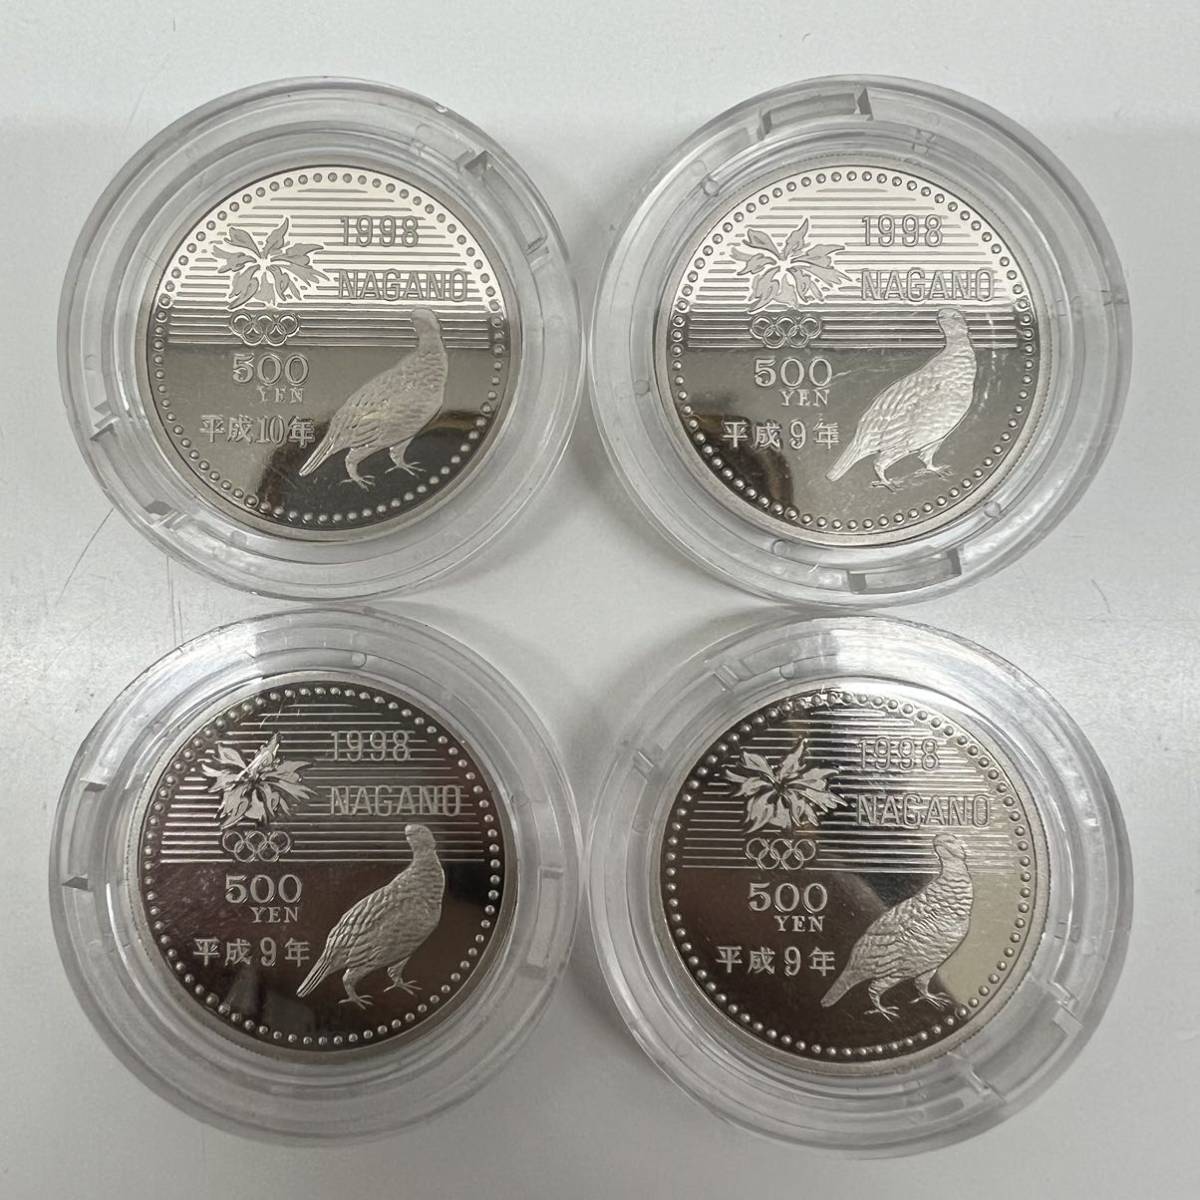 長野オリンピック冬季競技大会記念 プルーフ貨幣セット 500円4枚セット